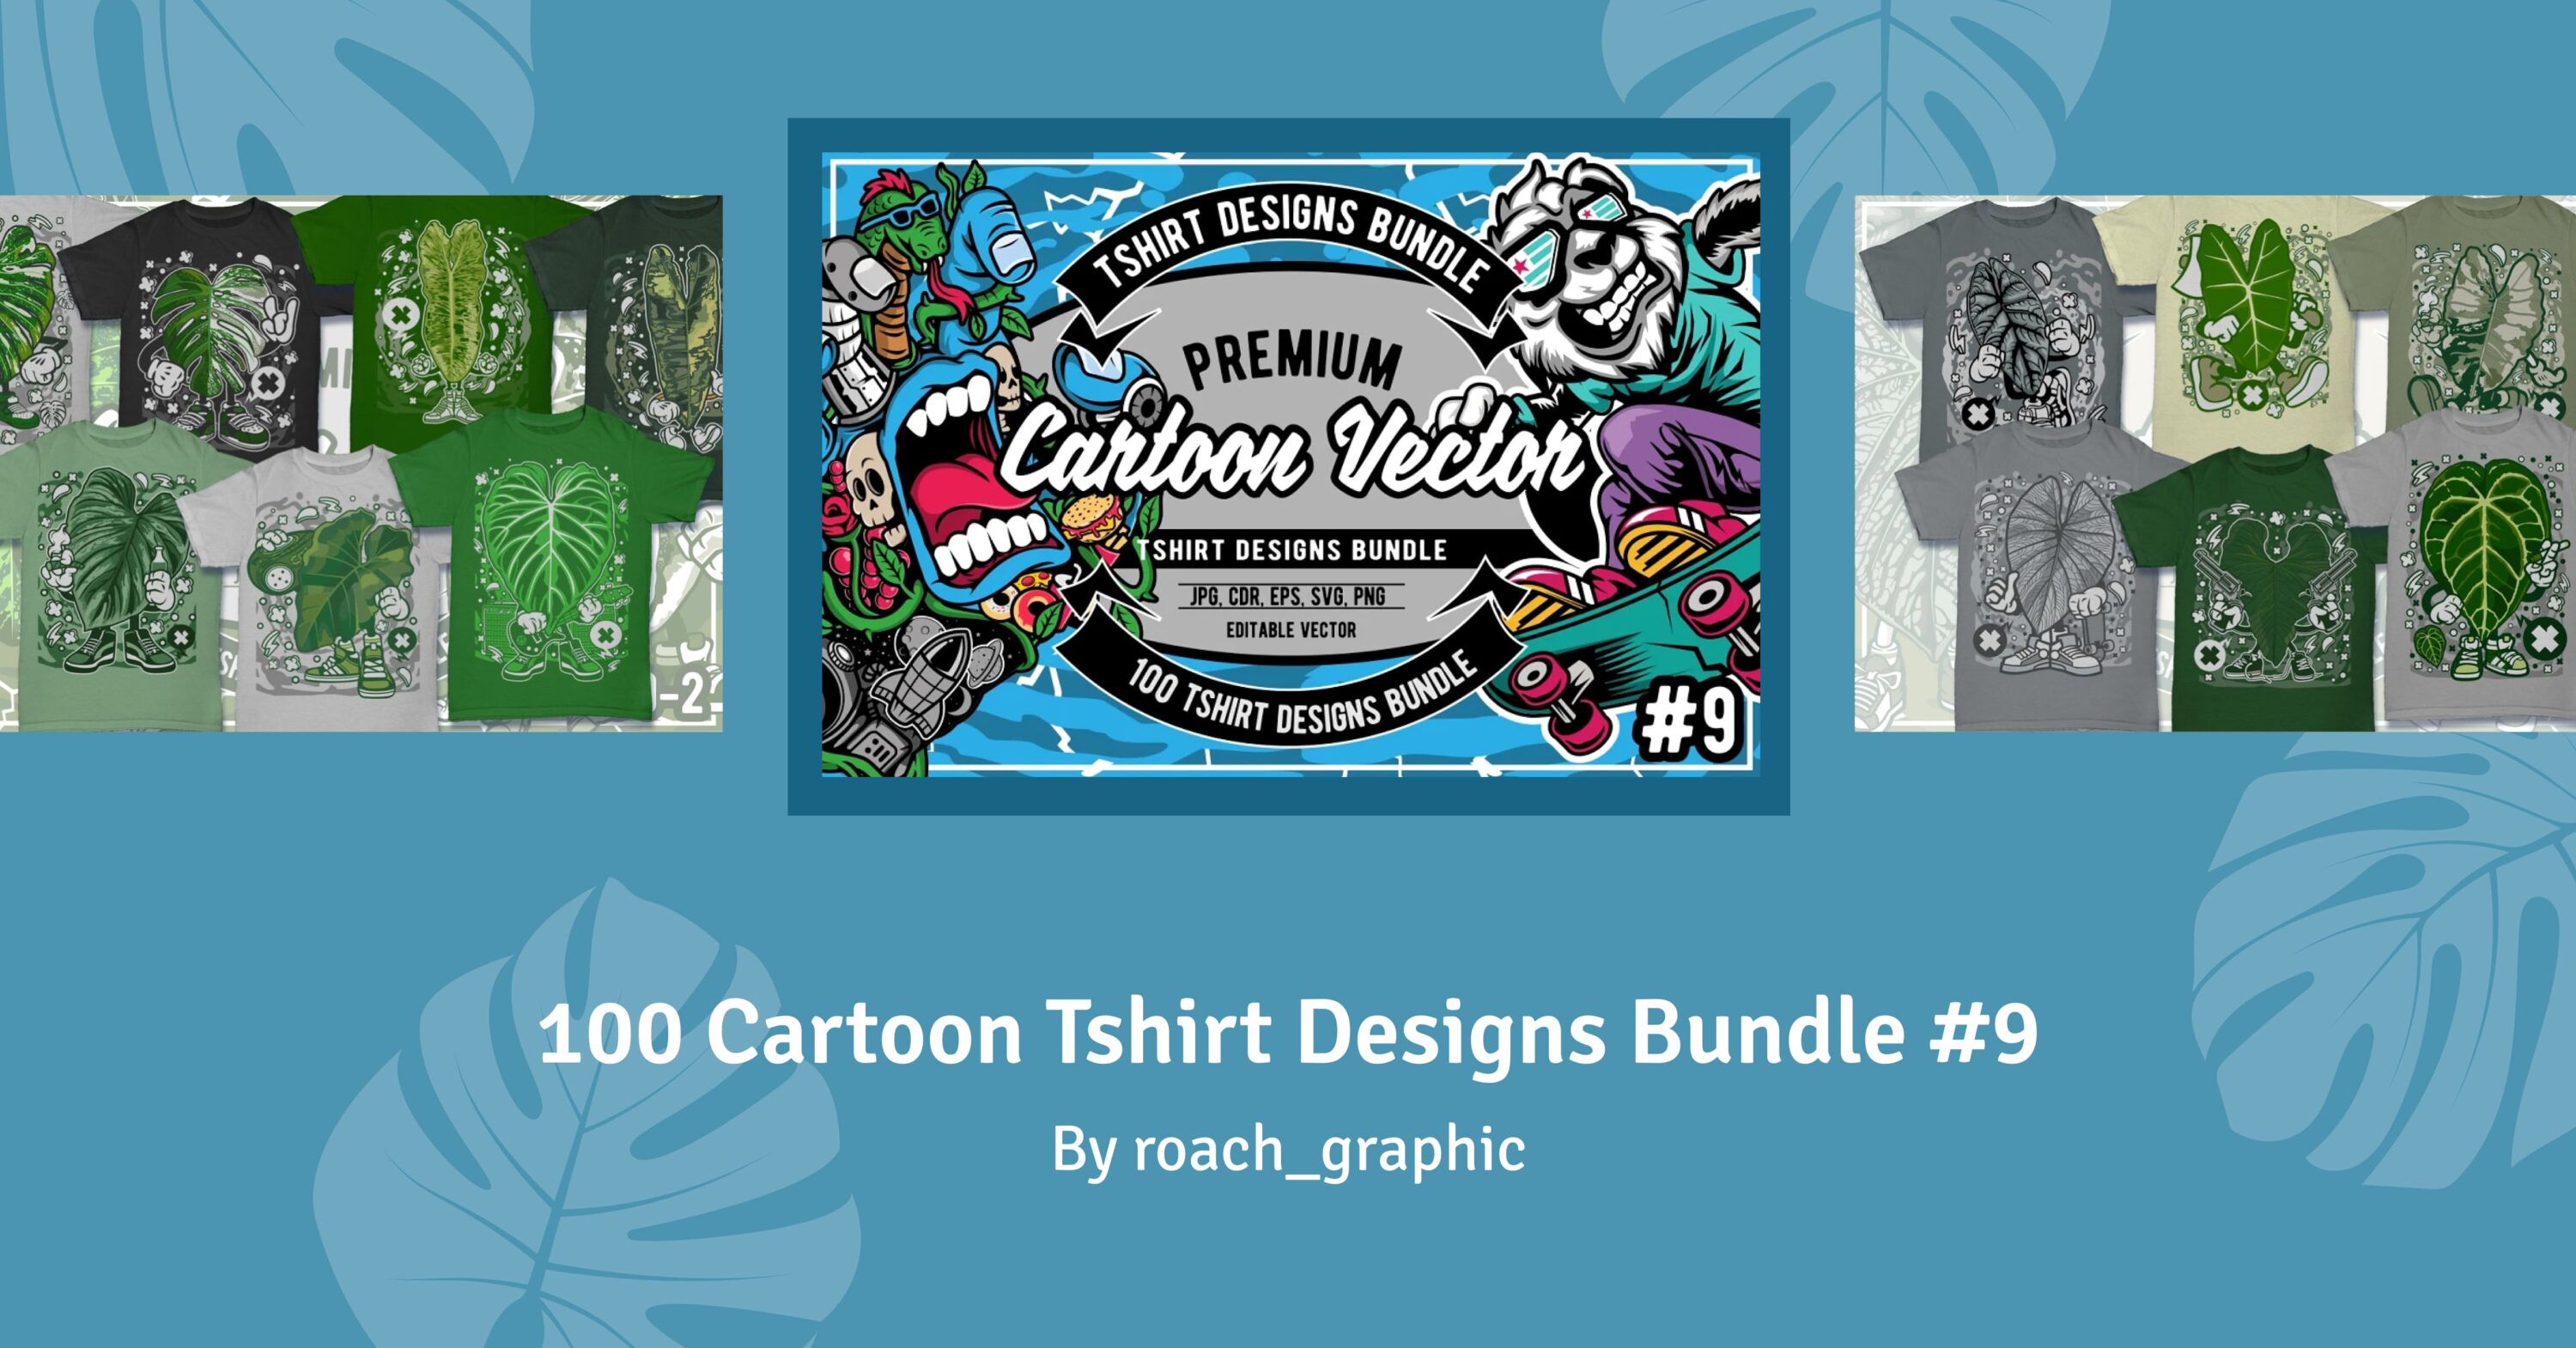 100 Cartoon Tshirt Designs Bundle #9 facebook image.